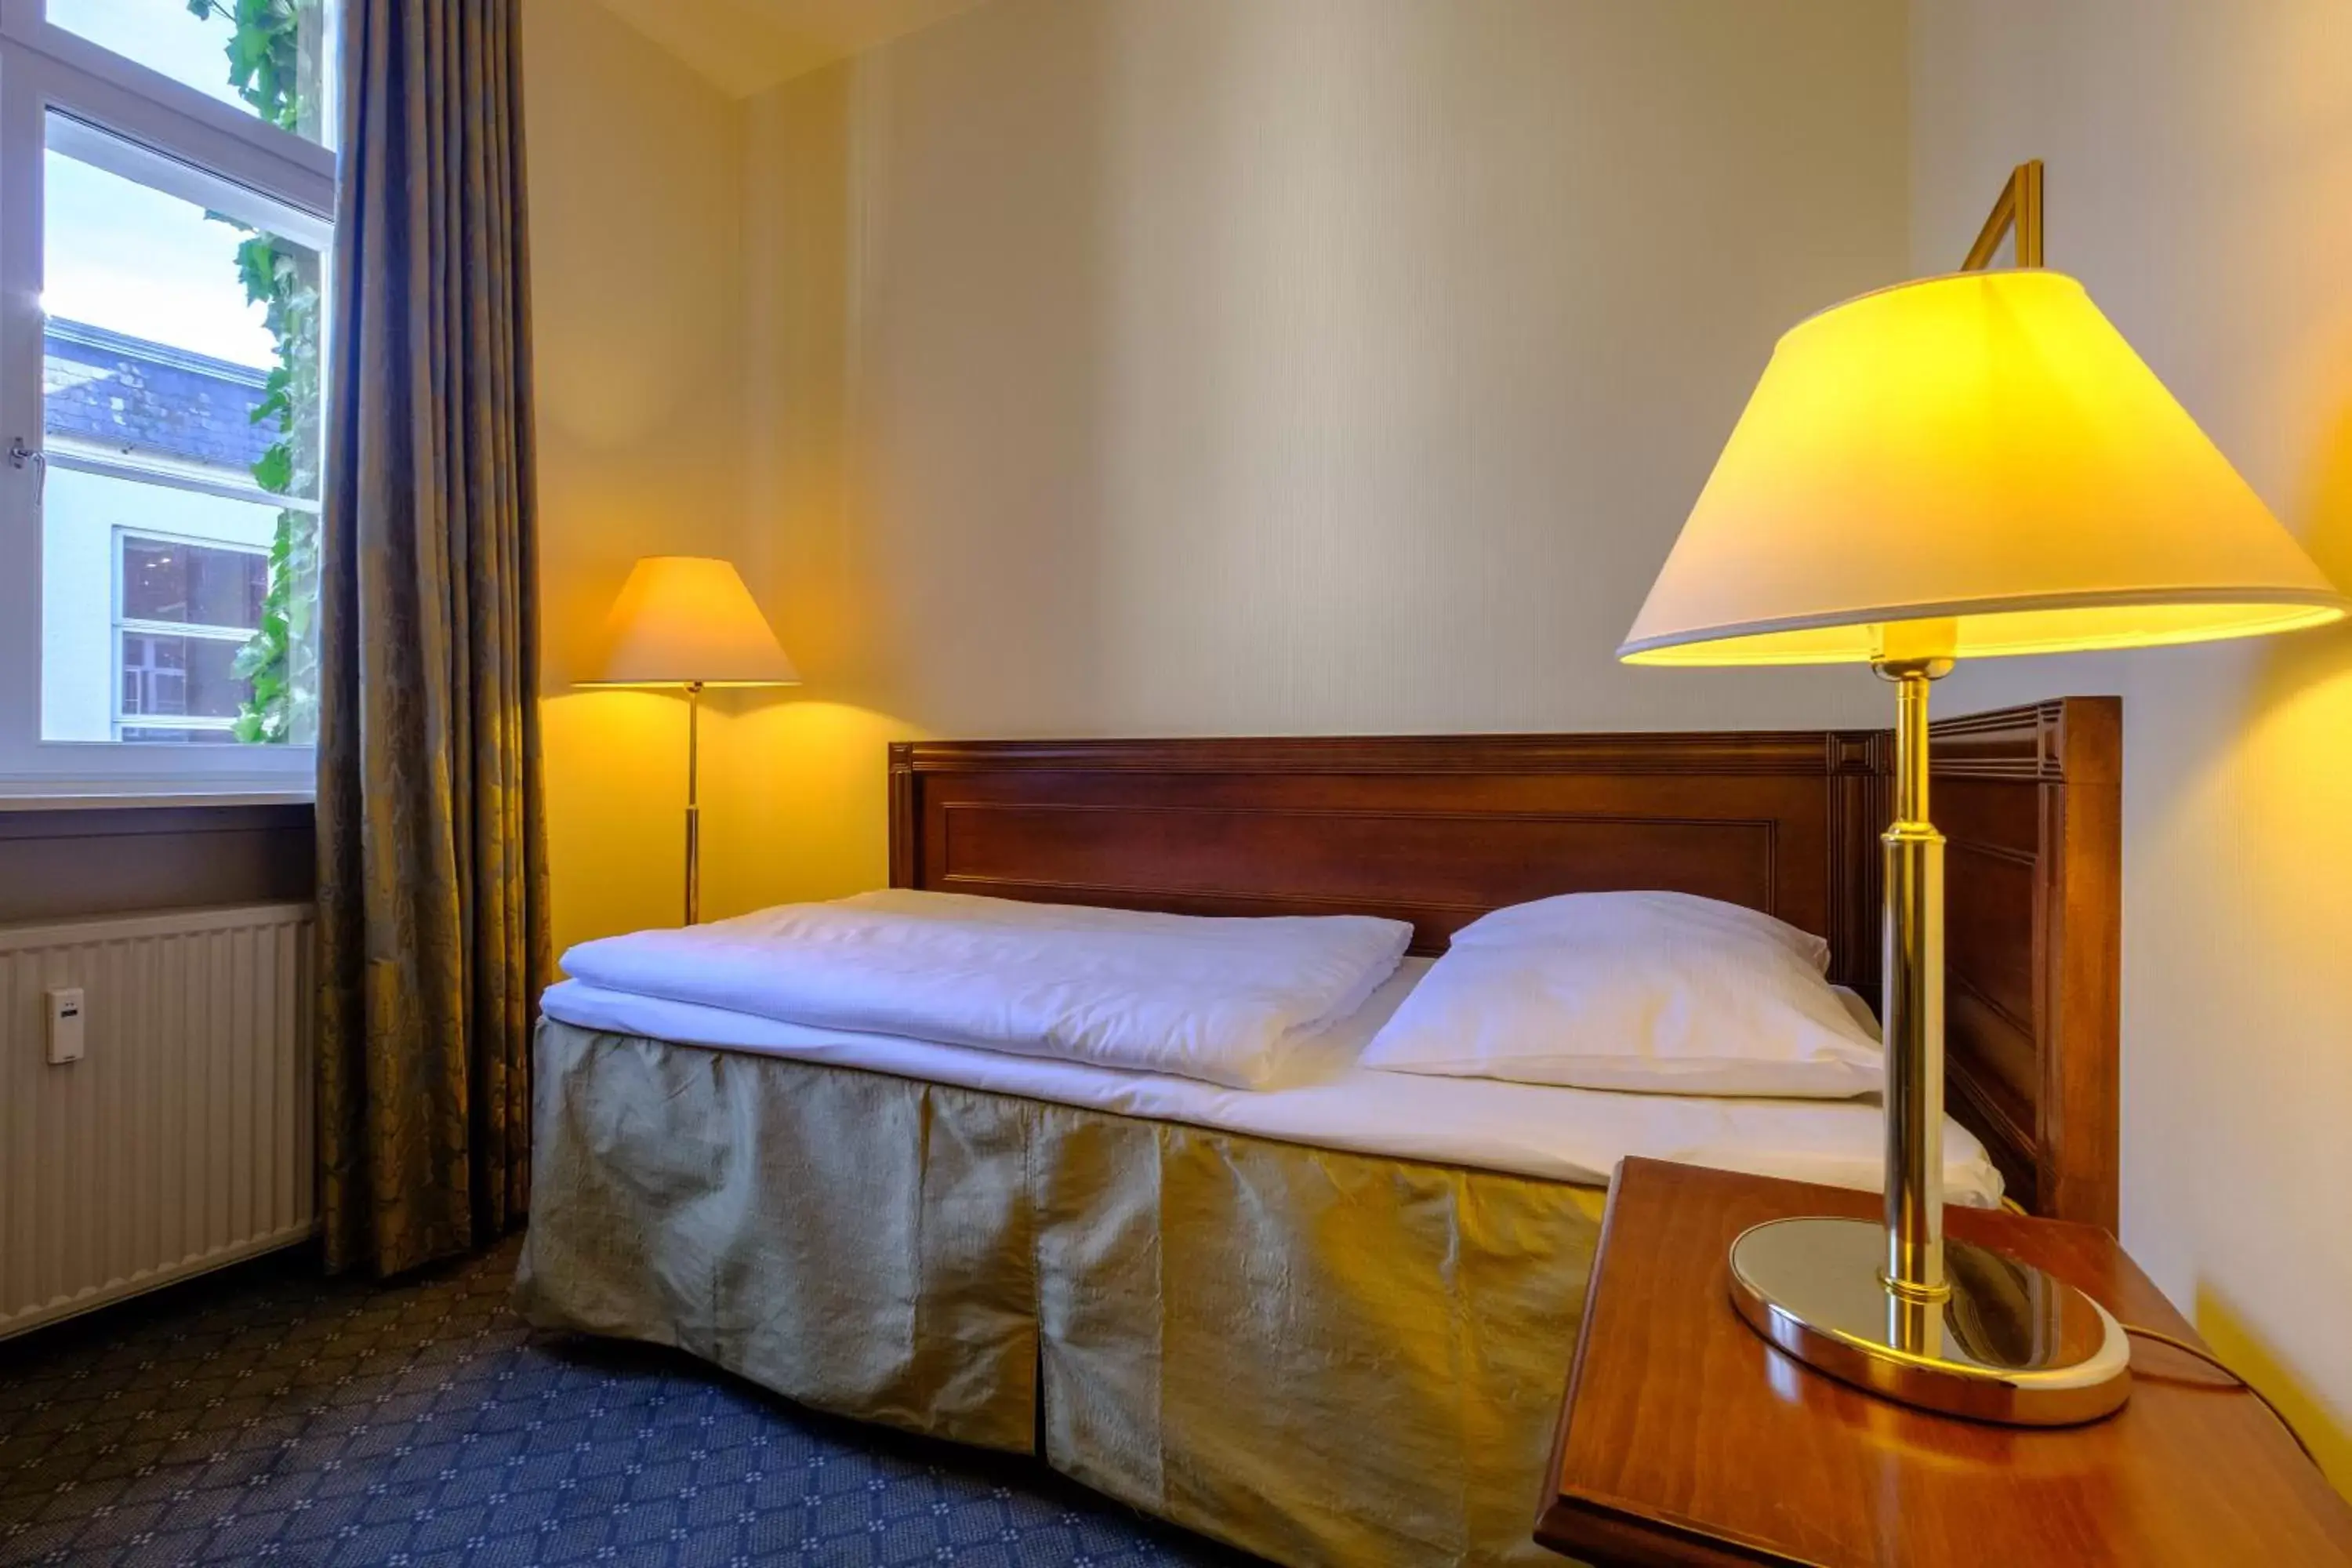 Bed, Room Photo in Zleep Hotel Prindsen Roskilde